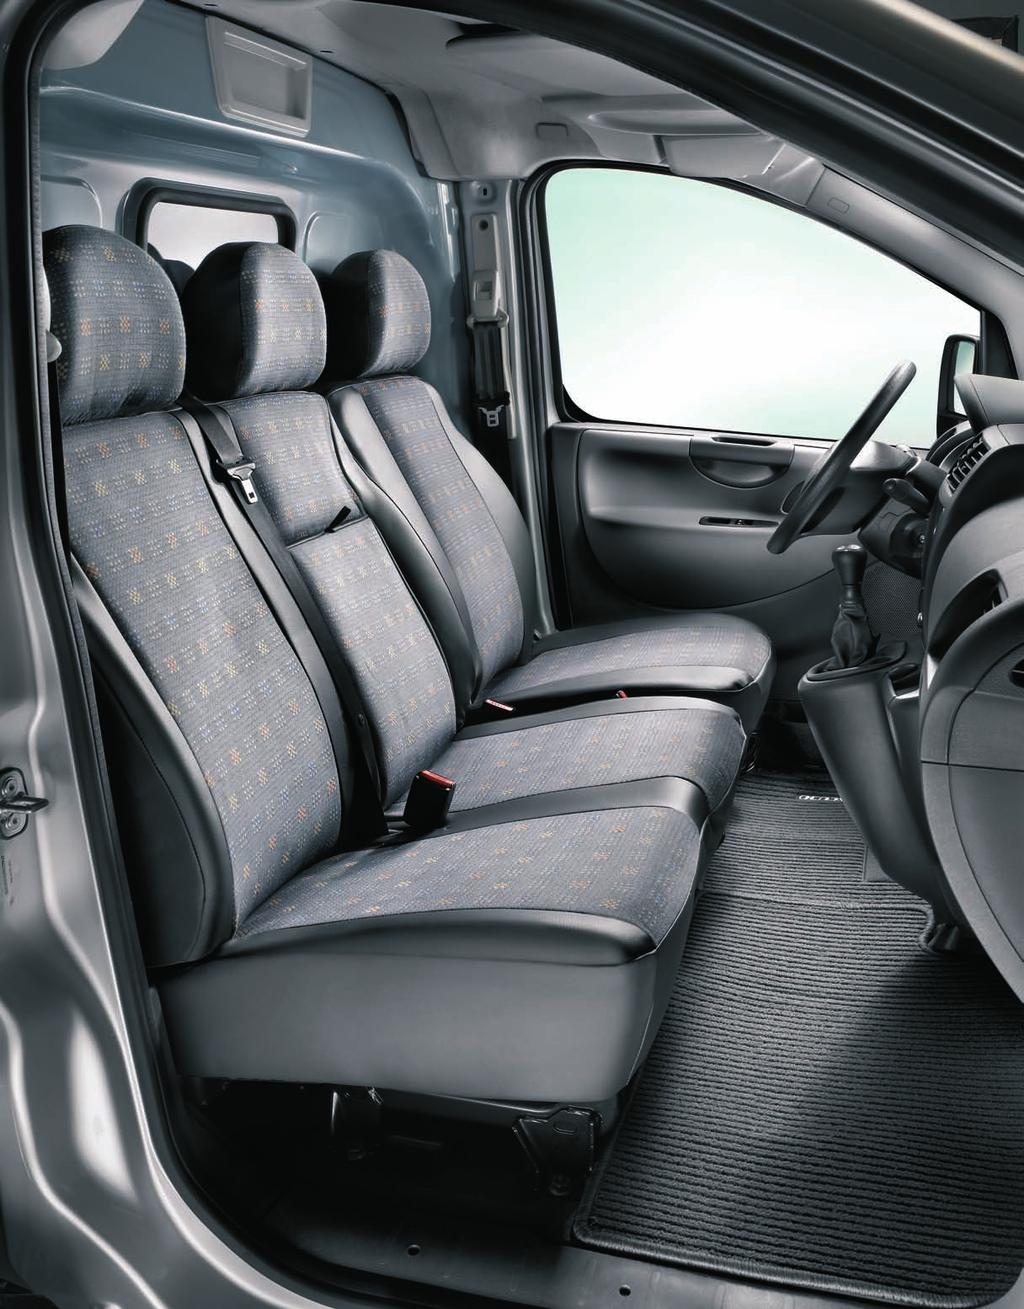 Ordine a bordo tappeti in moquette anteriore per veicolo furgone con 2 sedili oppure 1 sedile più panchetta.